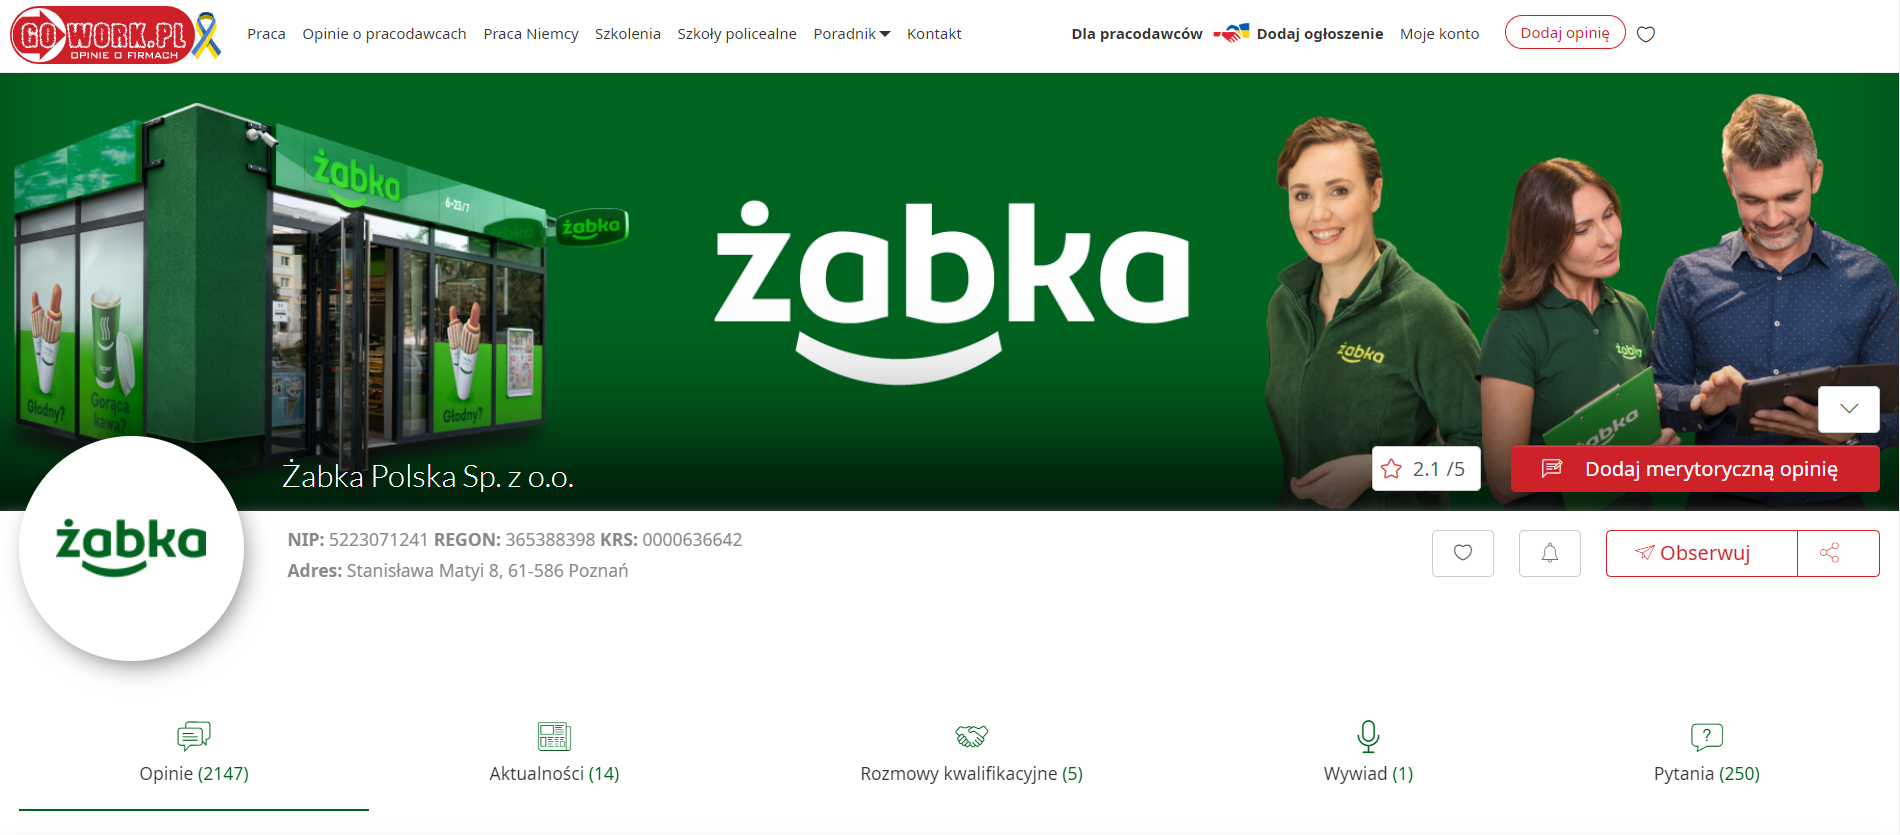 profil firmy Żabka na GoWork.pl